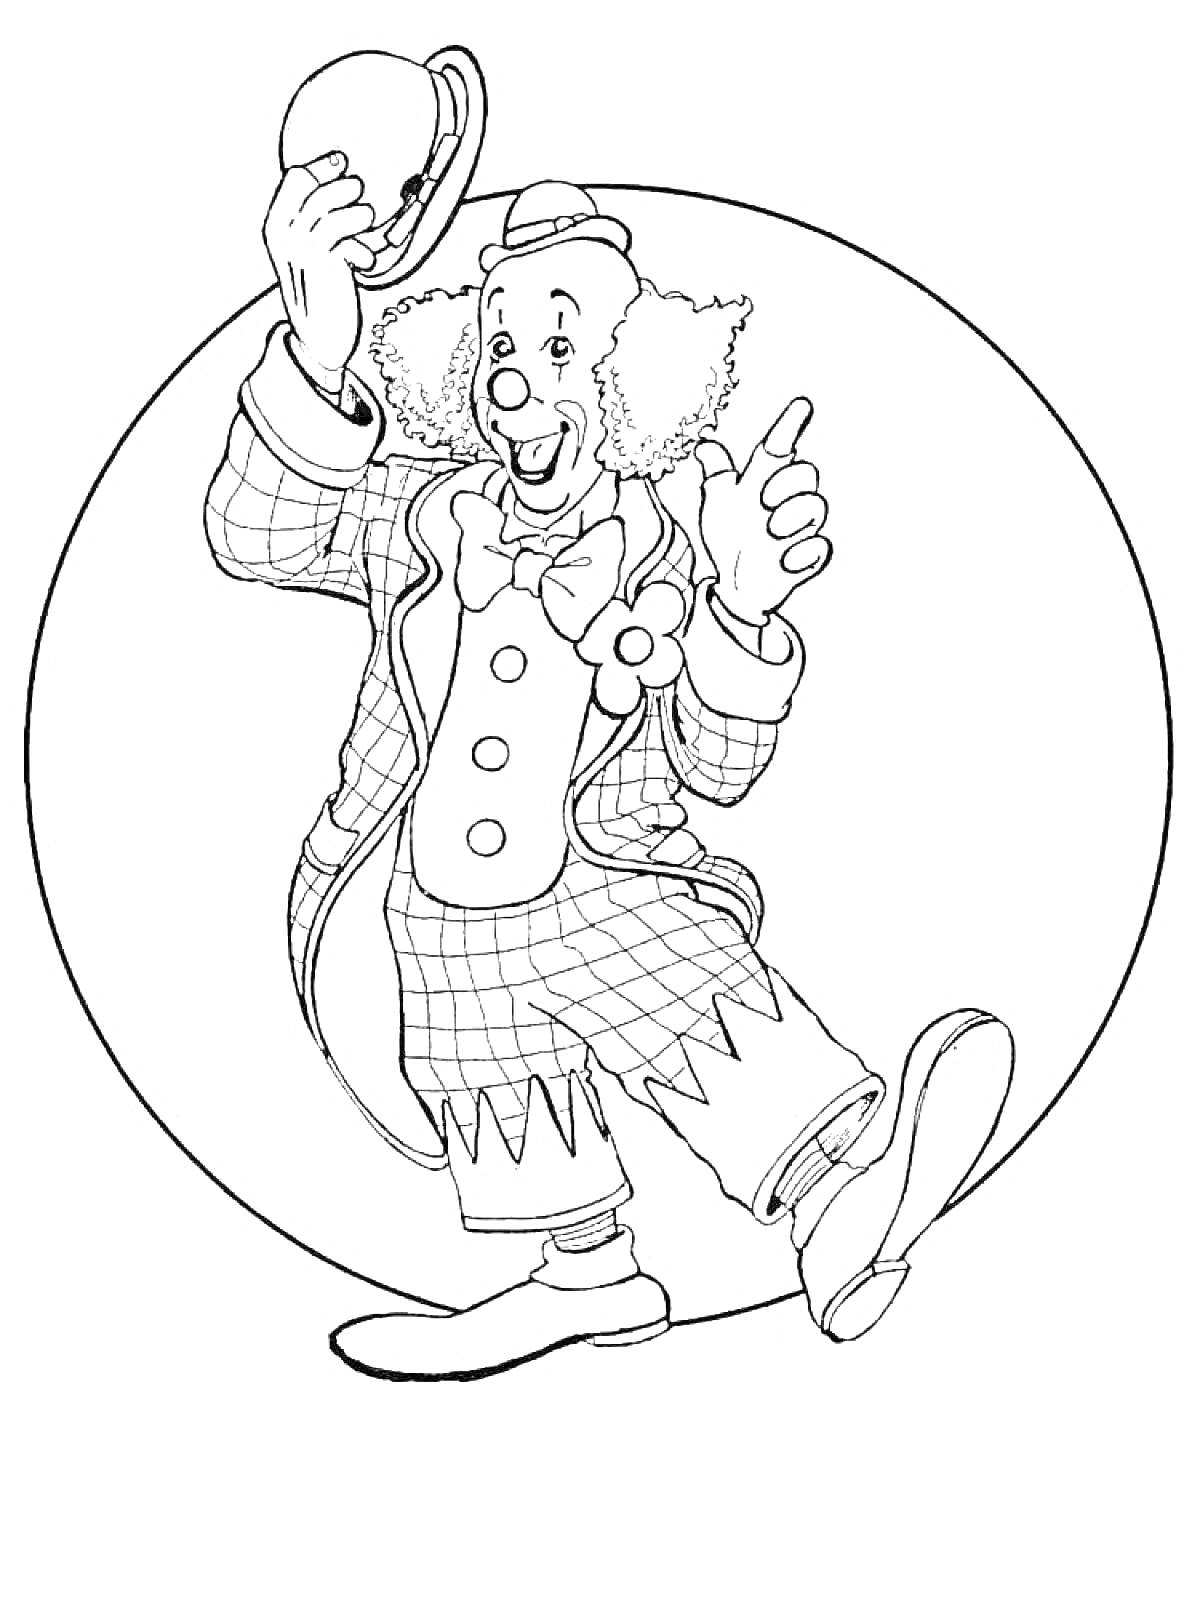 Раскраска Клоун, держащий шляпу, гофрированные волосы, костюм с клетчатым узором, пуговицы-большие круги, бант, клоунские туфли, круглый фон.